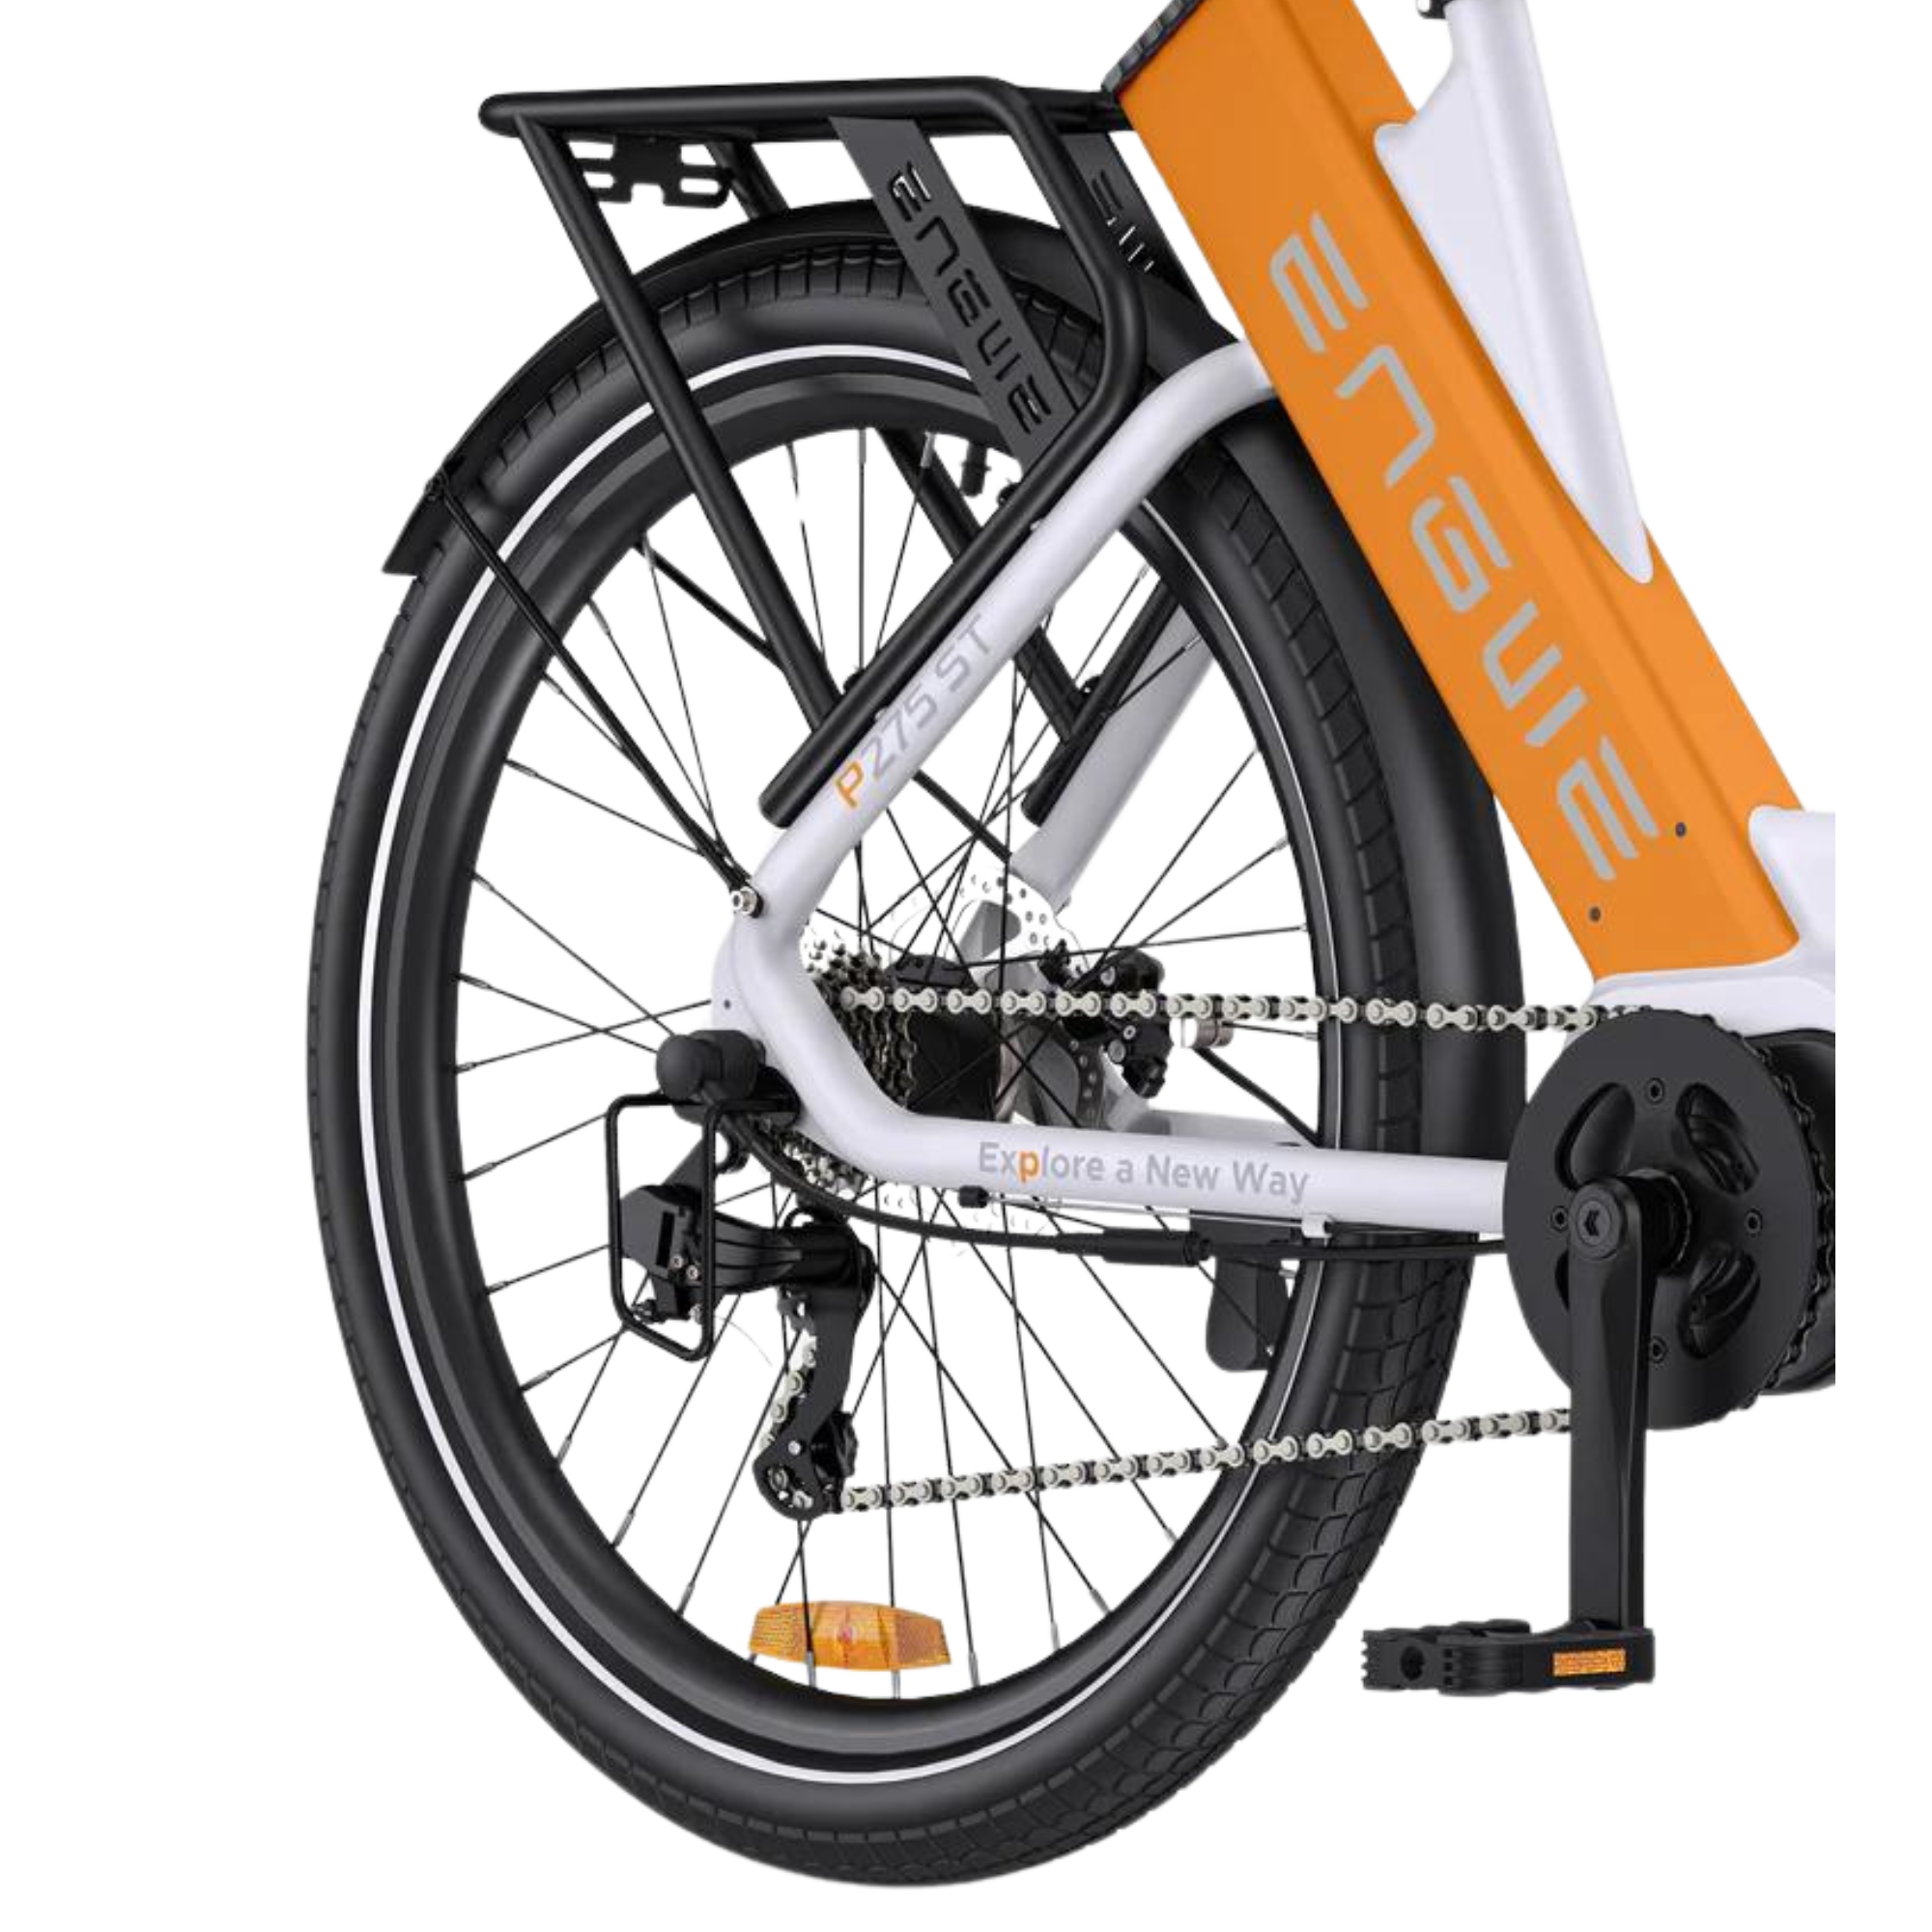 Vélo électrique| Engwe P275 ST | 250 W | V-max 25 km/h | Autonomie 150 km - Atom Motors